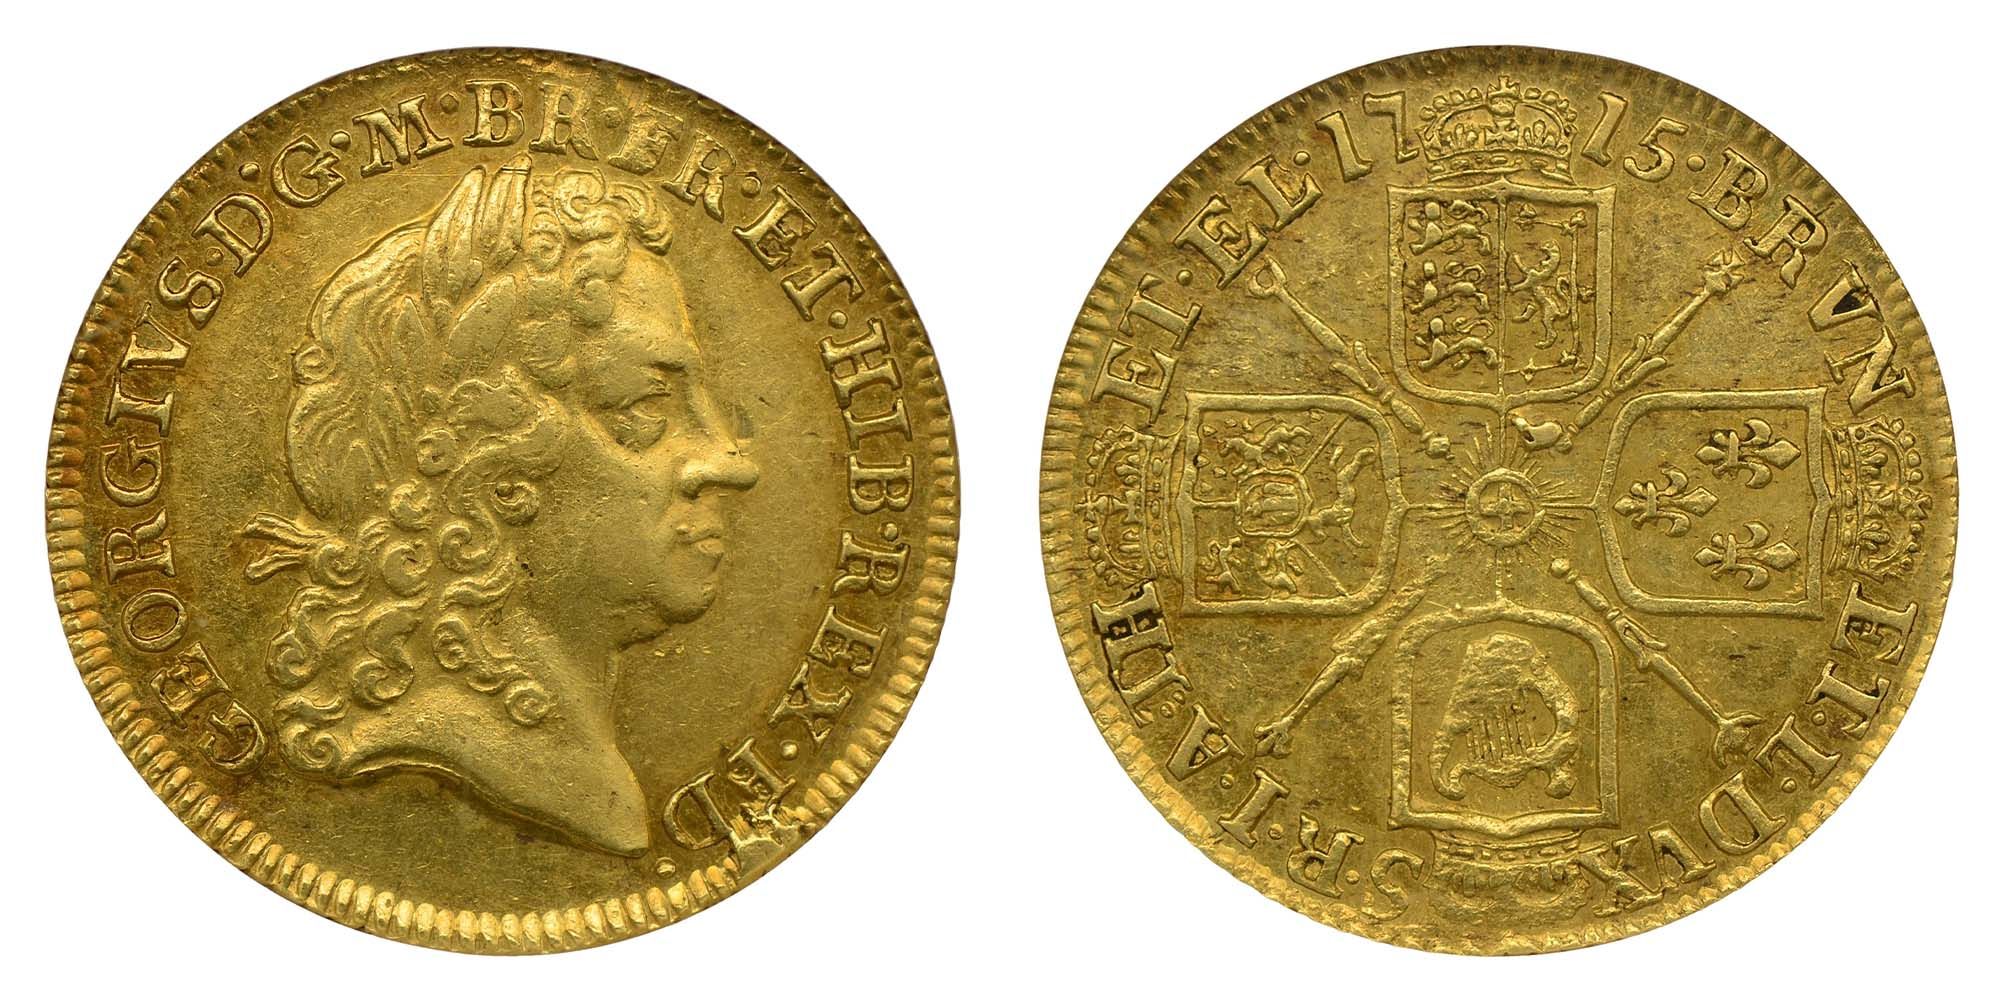 George I Gold Guinea 1715 A rare type